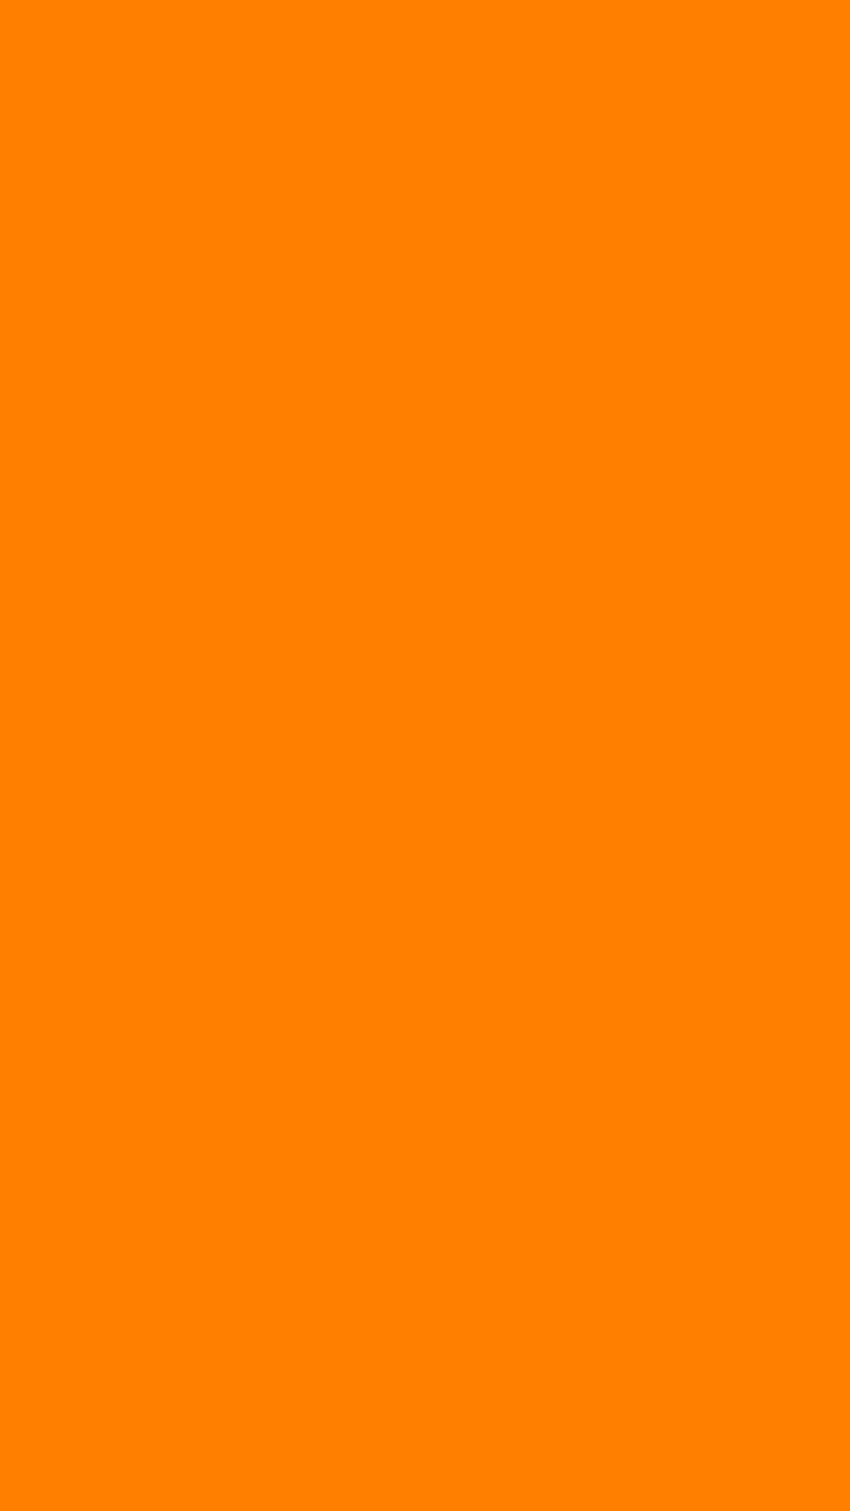 Rueda de color naranja 1080x1920 s de color sólido, naranja sólido fondo de pantalla del teléfono